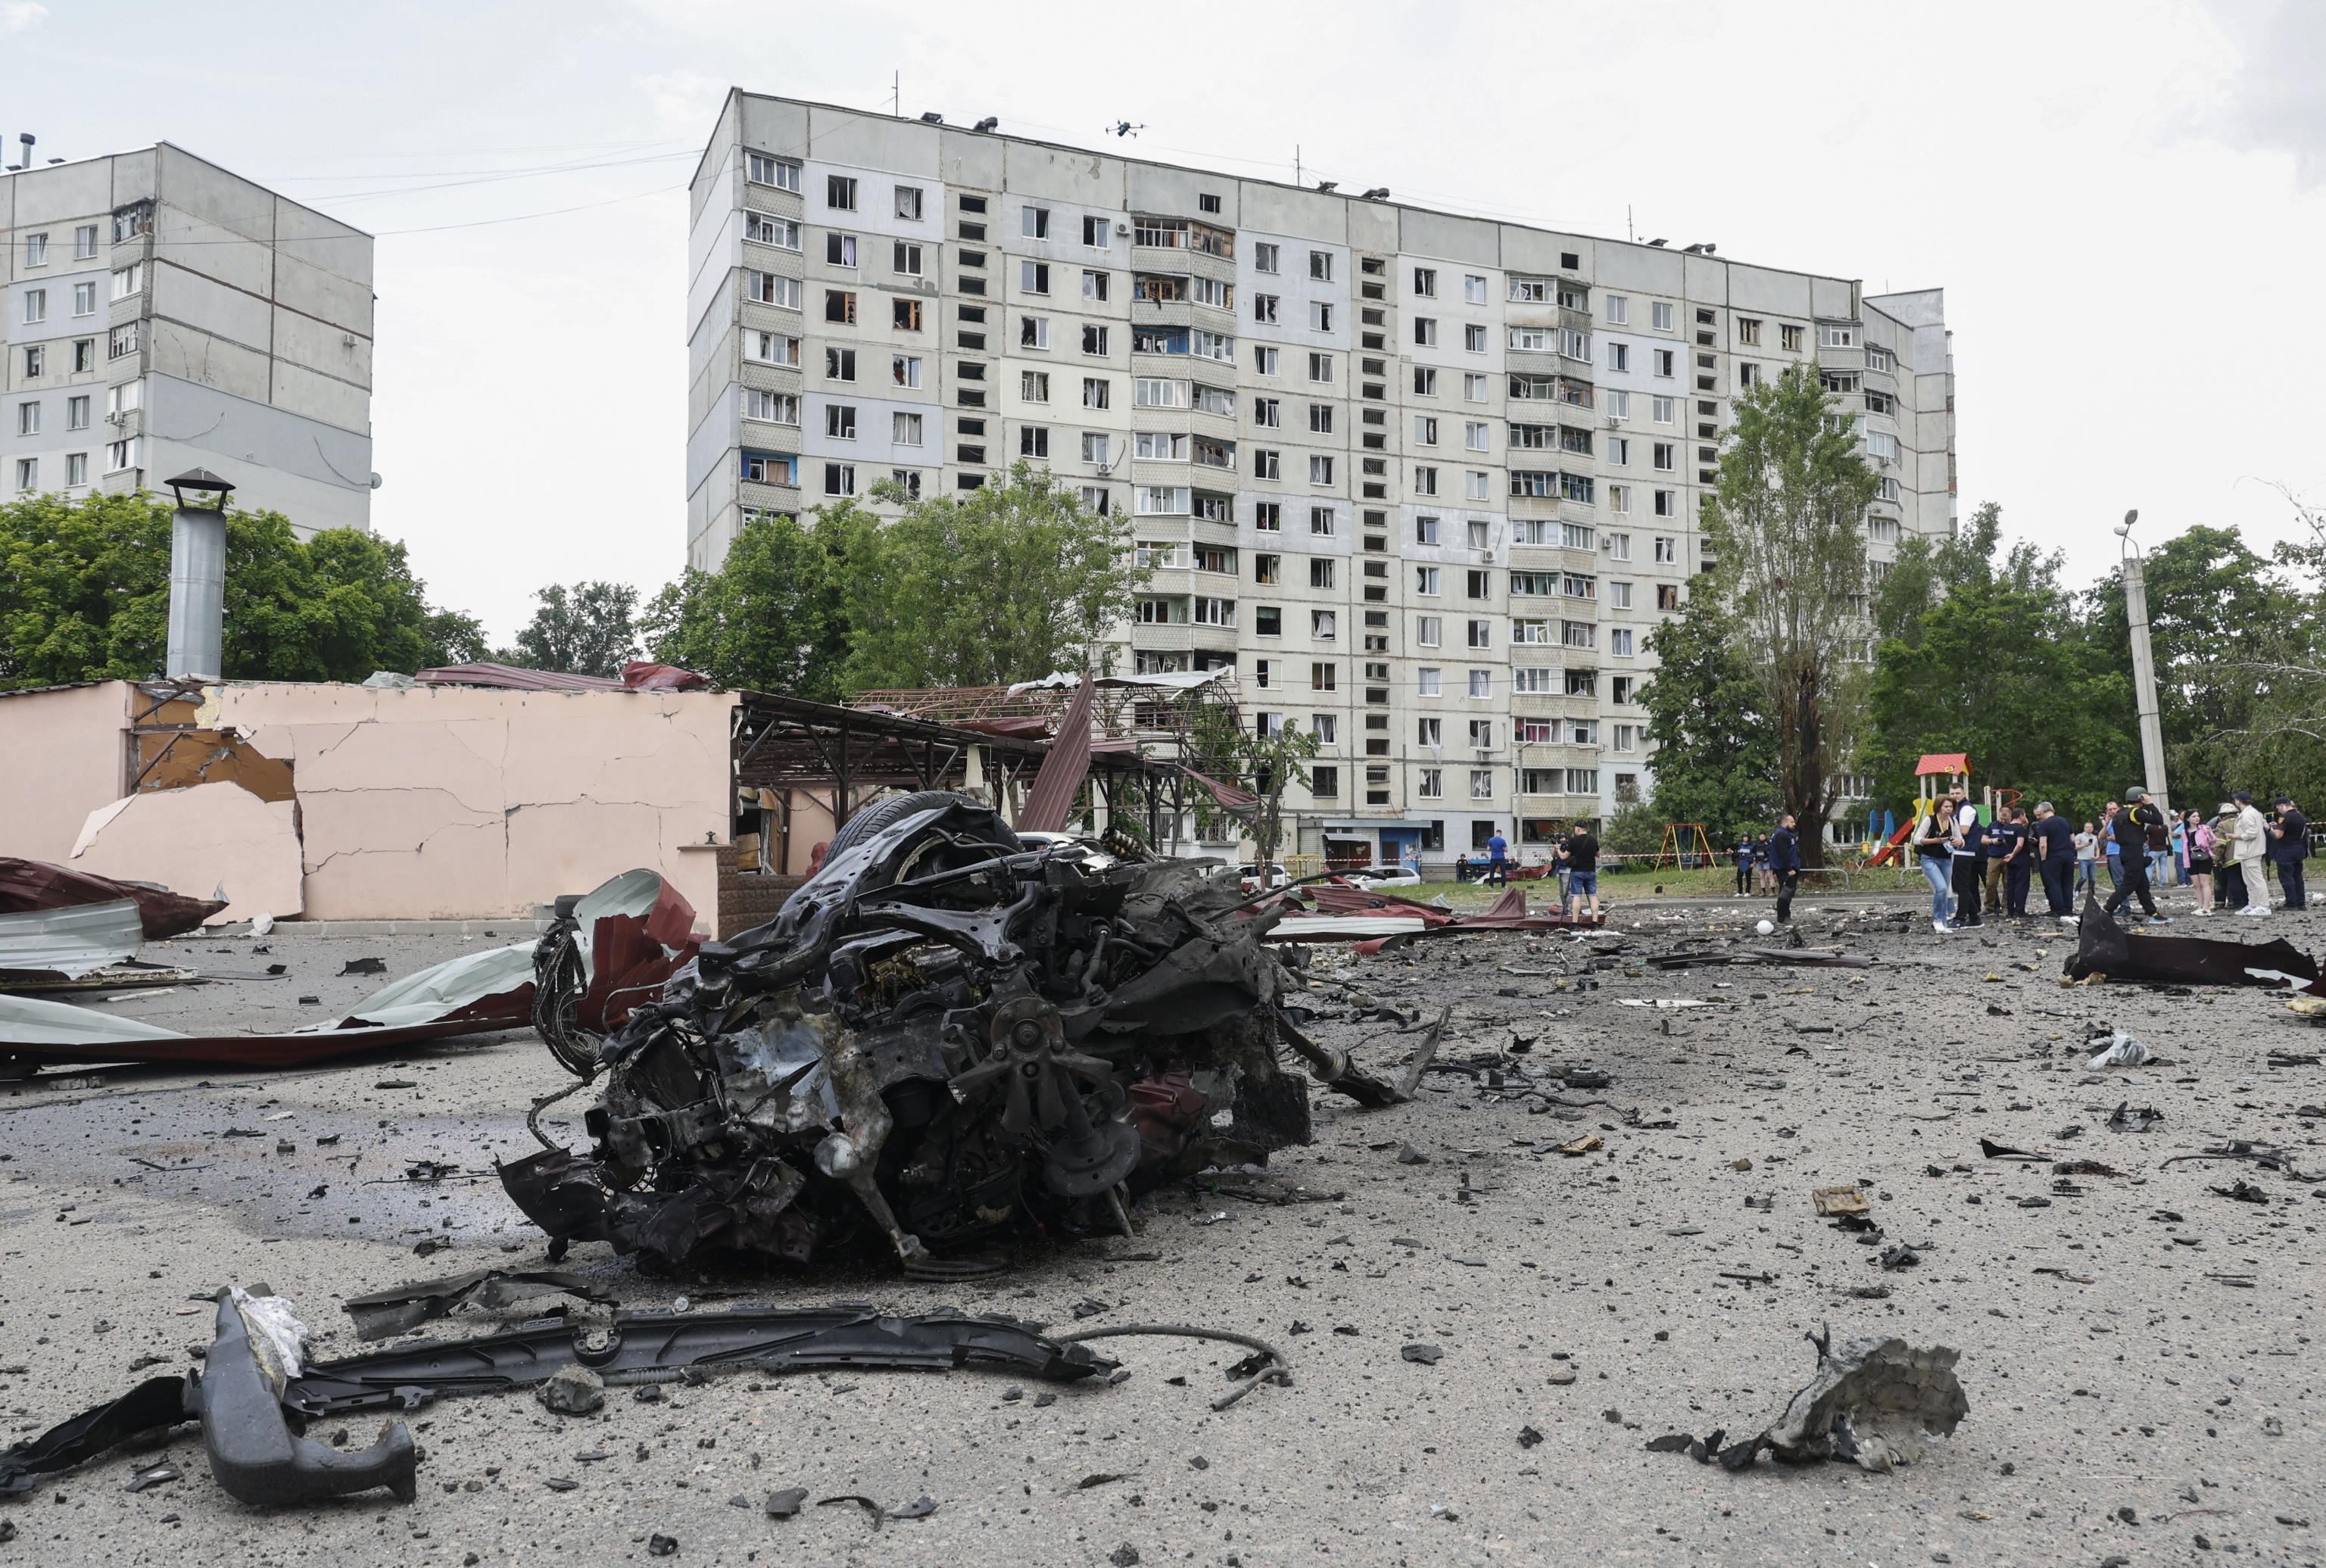 Ucraina - Russia, le notizie di oggi in diretta | Evacuate 11 mila persone dalla regione di Kharkiv. Russia: arrestato il generale Shamarin per corruzione